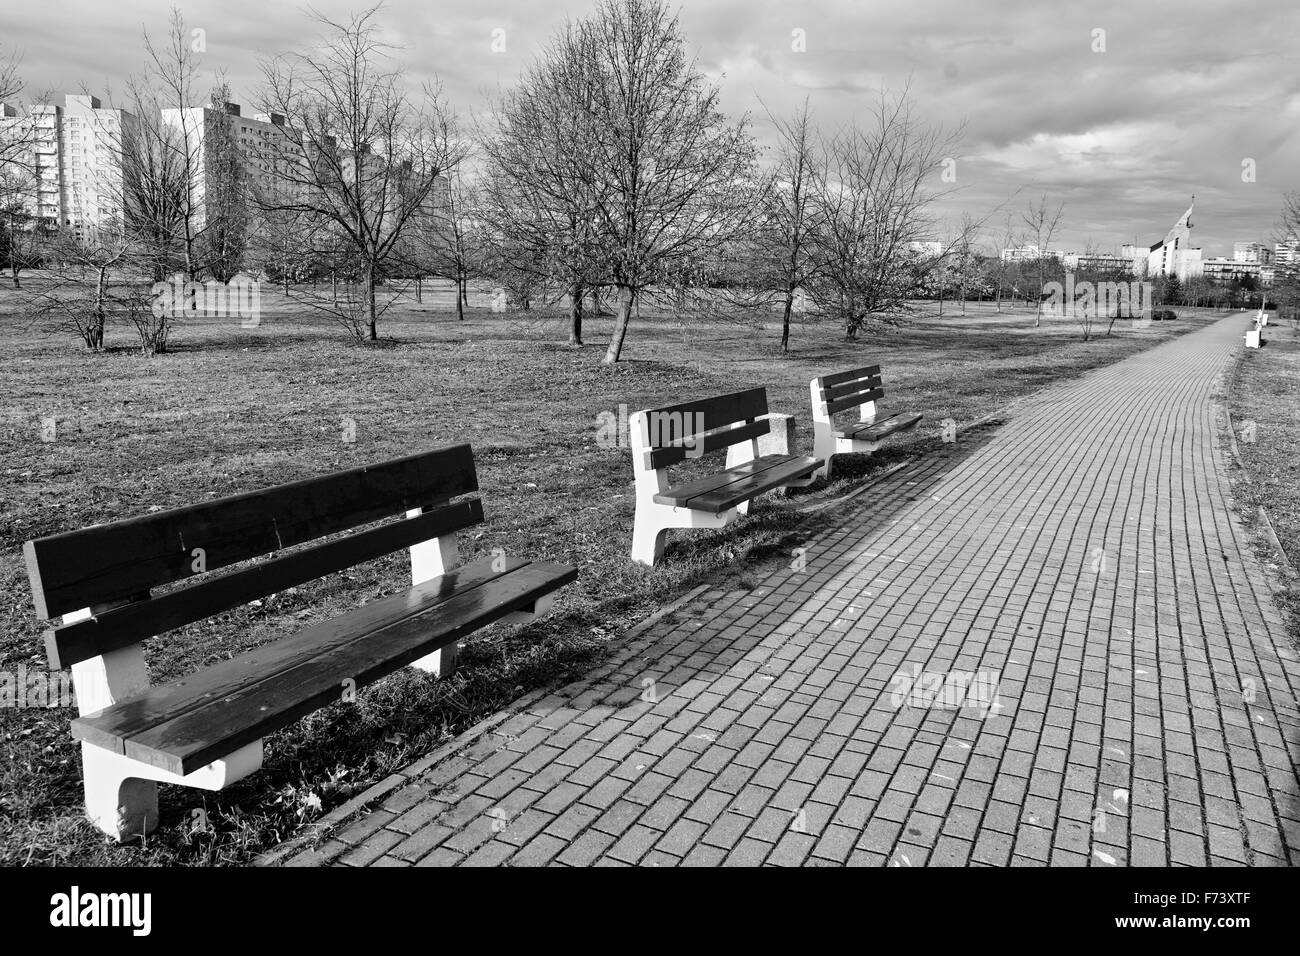 Bench in the park. Gdansk Zaspa, Poland. Stock Photo